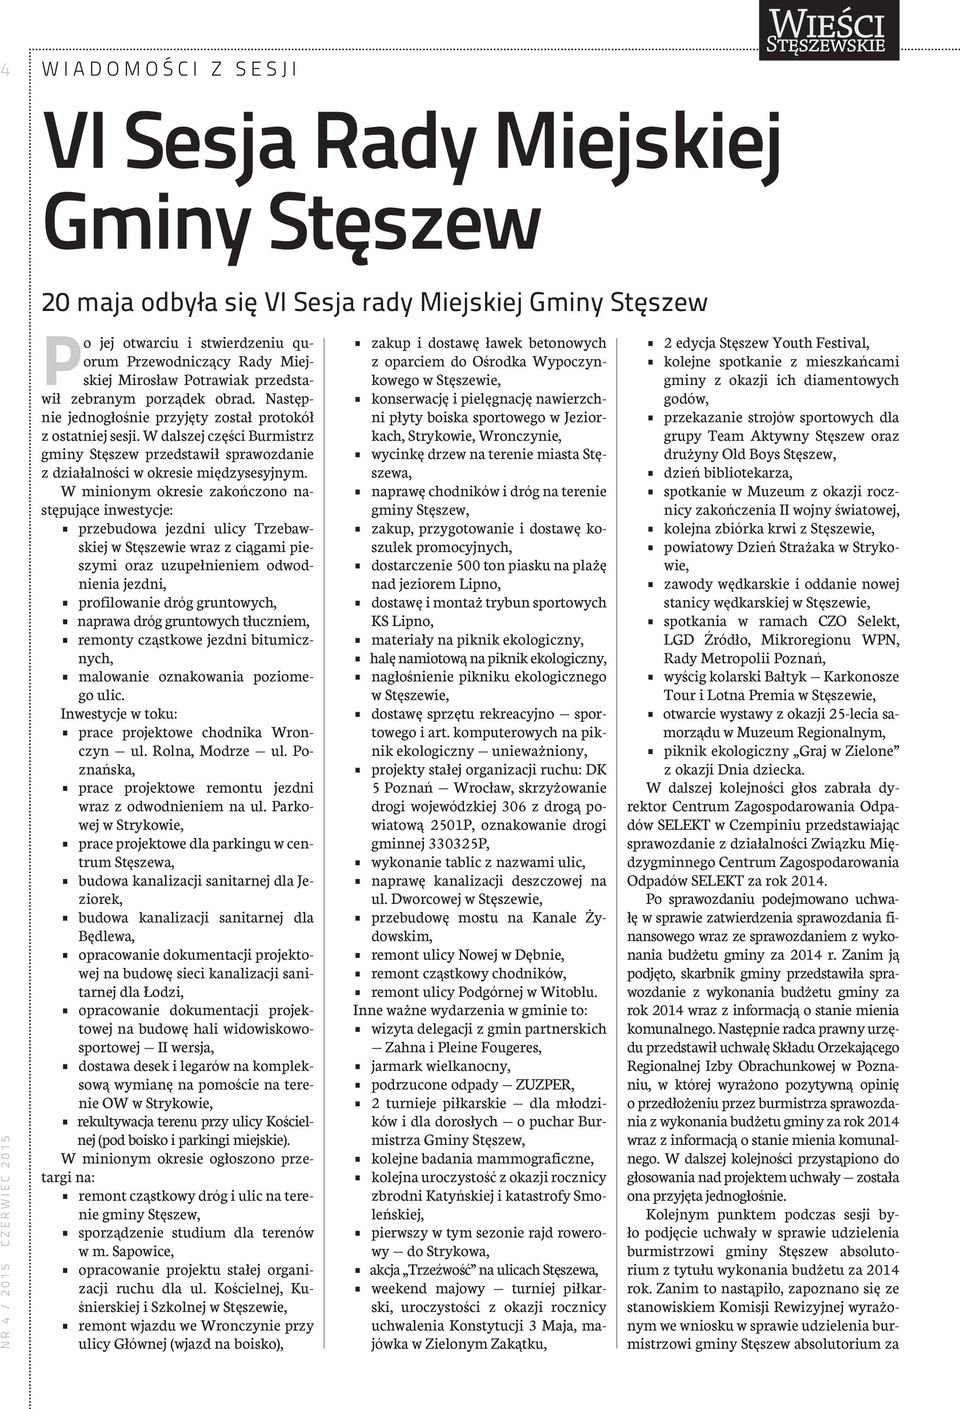 W dalszej części Burmistrz gminy Stęszew przedstawił sprawozdanie z działalności w okresie międzysesyjnym.